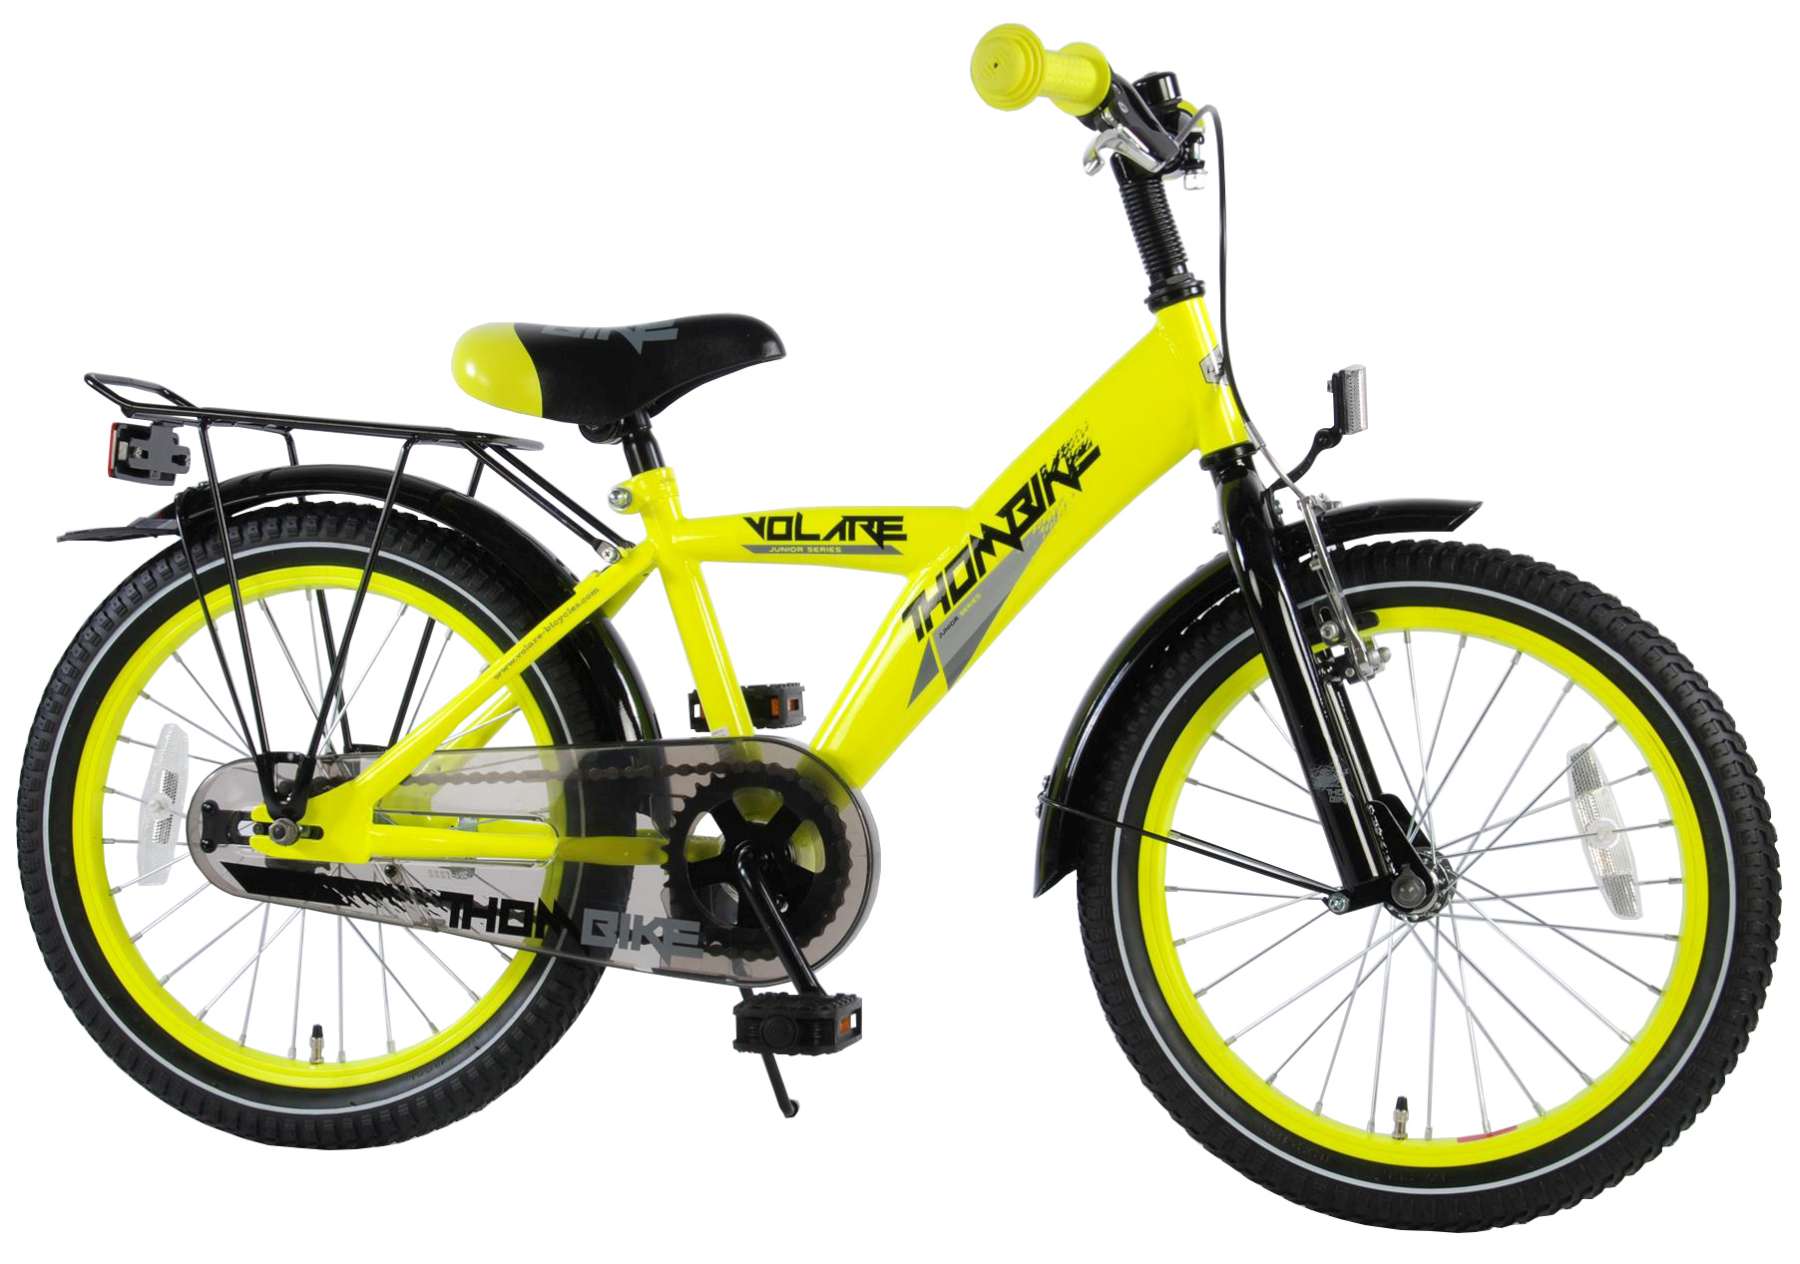 18 inch yellow bike